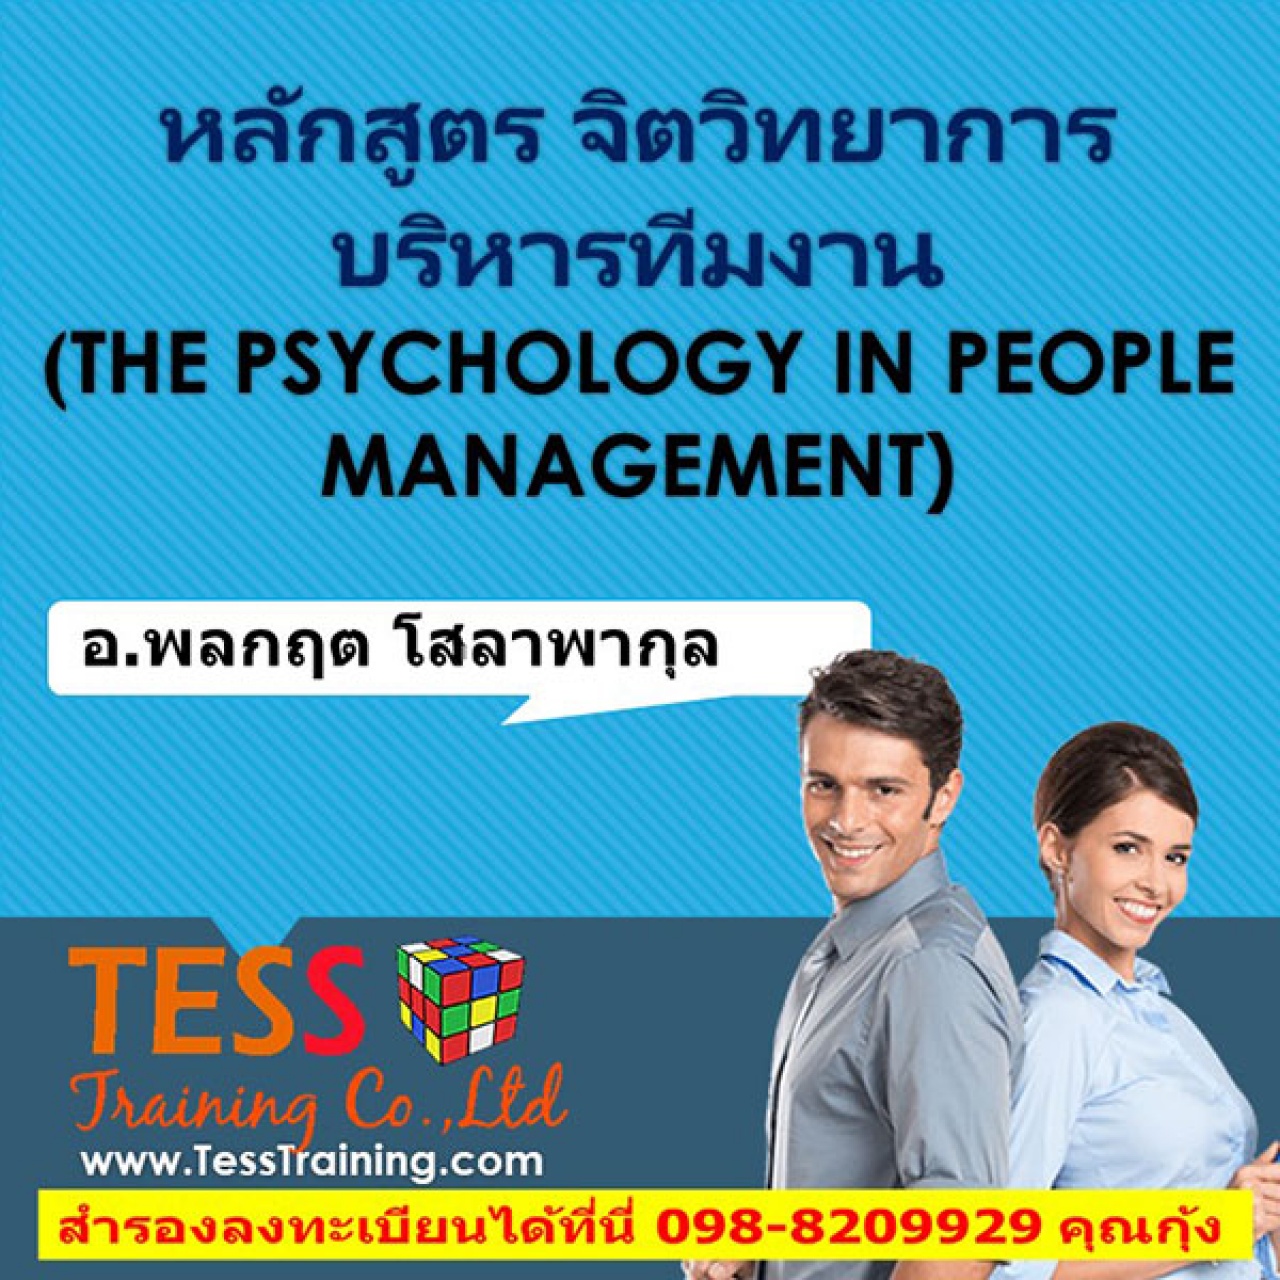 หลักสูตร จิตวิทยาการบริหารทีมงาน (THE PSYCHOLOGY IN PEOPLE MANAGEMENT) (21 ก.พ.62)